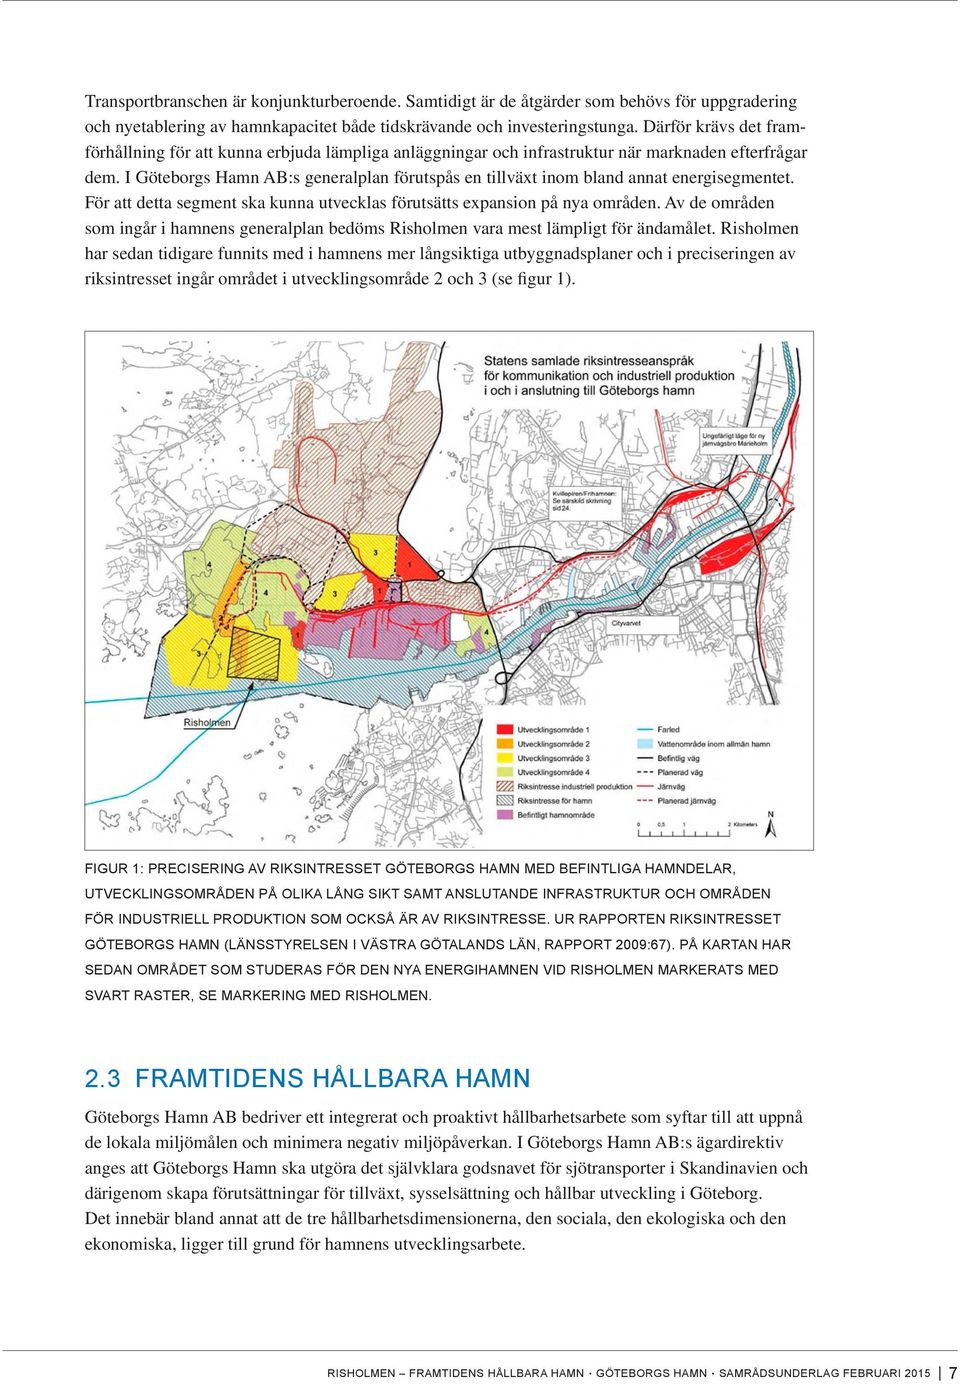 I Göteborgs Hamn AB:s generalplan förutspås en tillväxt inom bland annat energisegmentet. För att detta segment ska kunna utvecklas förutsätts expansion på nya områden.